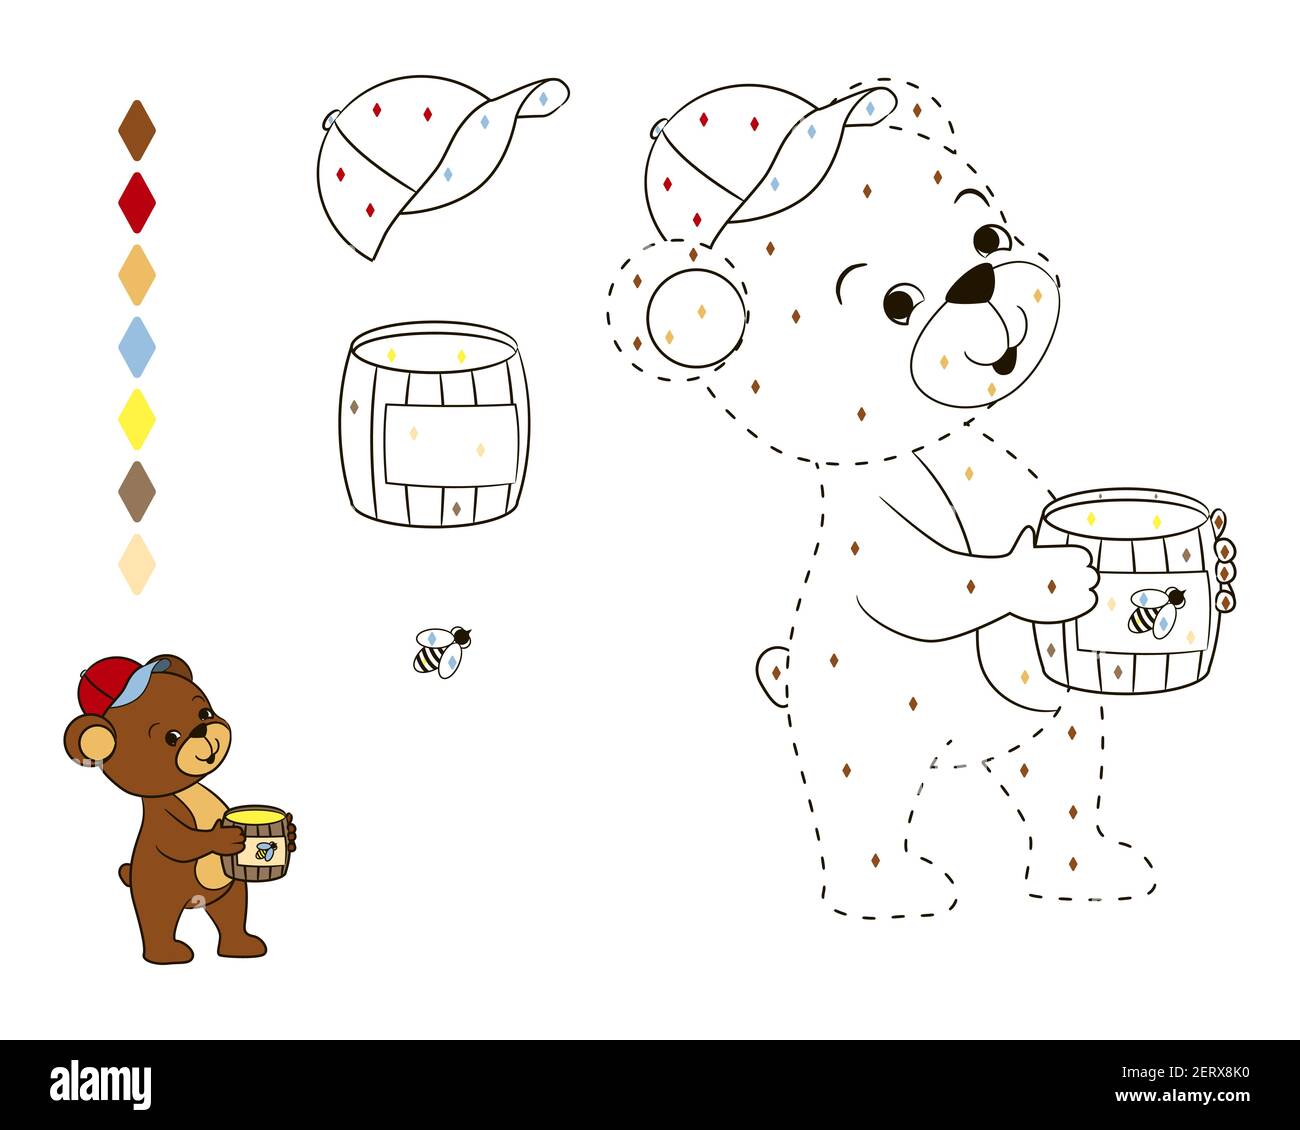 Рисунок на тему забавный Медвежонок